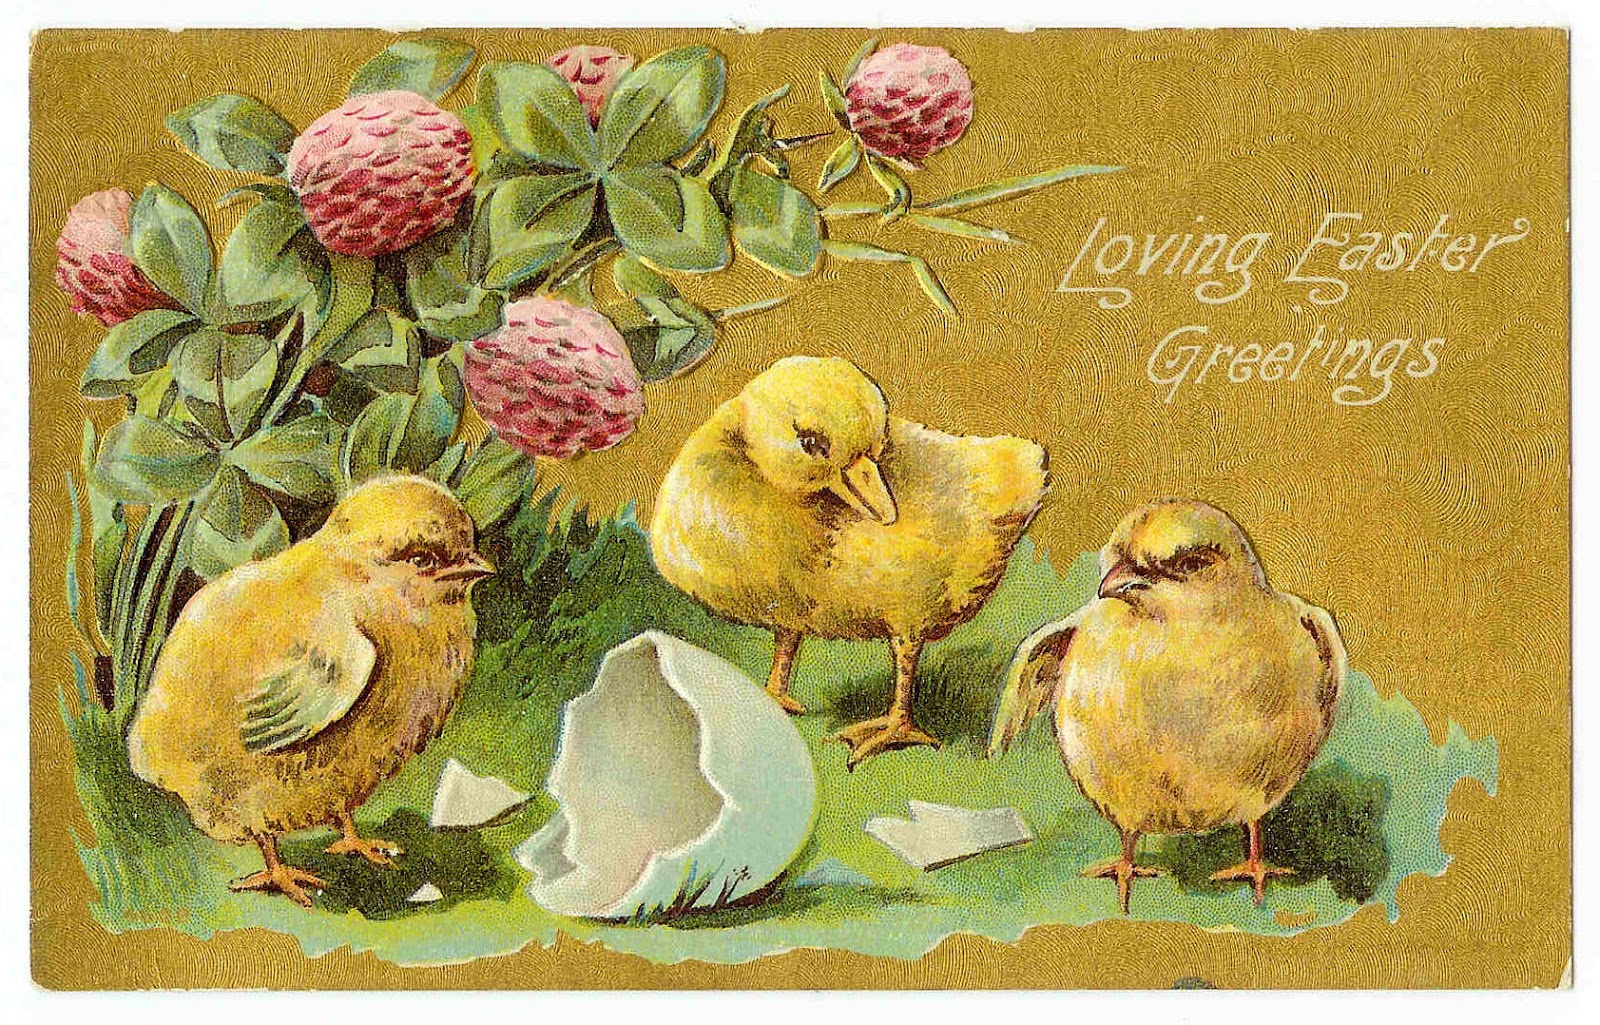 Antique Images  Vintage Easter Clip Art  Easter Postcard With Chicks